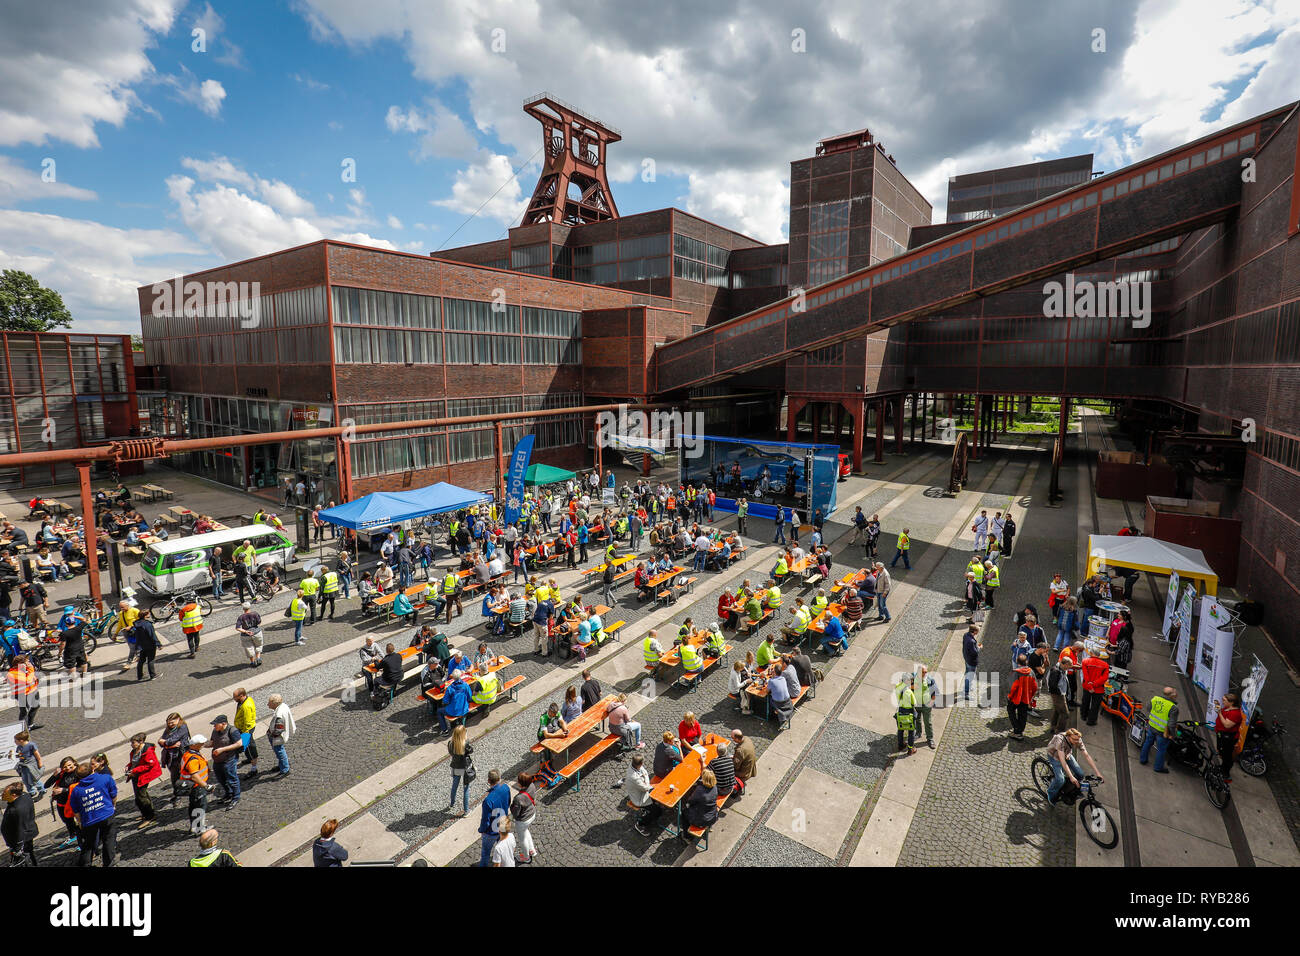 Essen, Ruhrgebiet, Nordrhein-Westfalen, Deutschland - Stadt Radfahren, Radfahren für ein gutes Klima, ein Ereignis, eine Kampagne des Klima-bündnis, hier Ankunft am Stockfoto